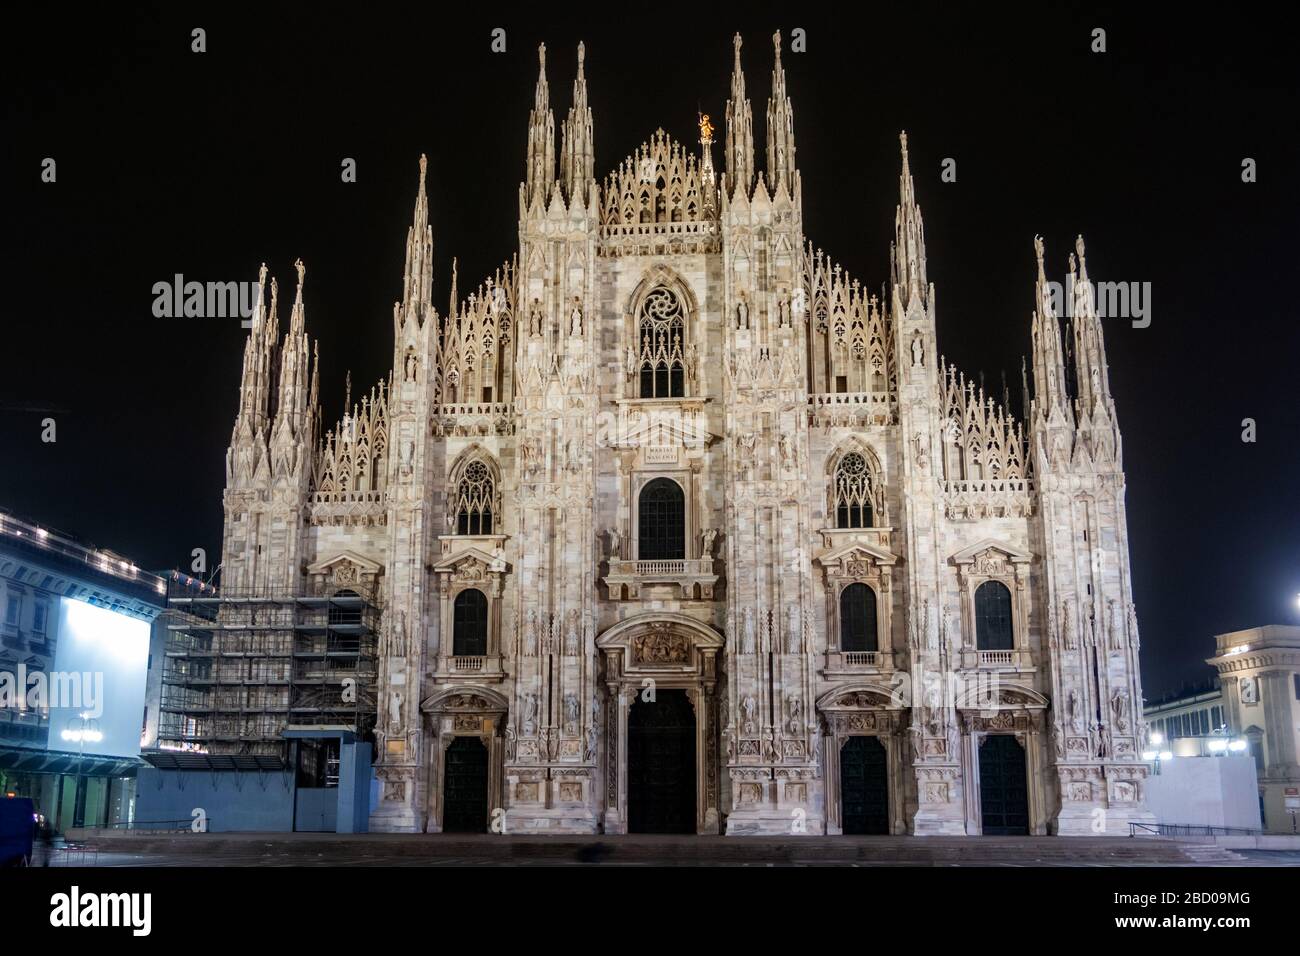 Milan Cathedral, Duomo di Milano, at night. Italy. Milan Chatedral is ...